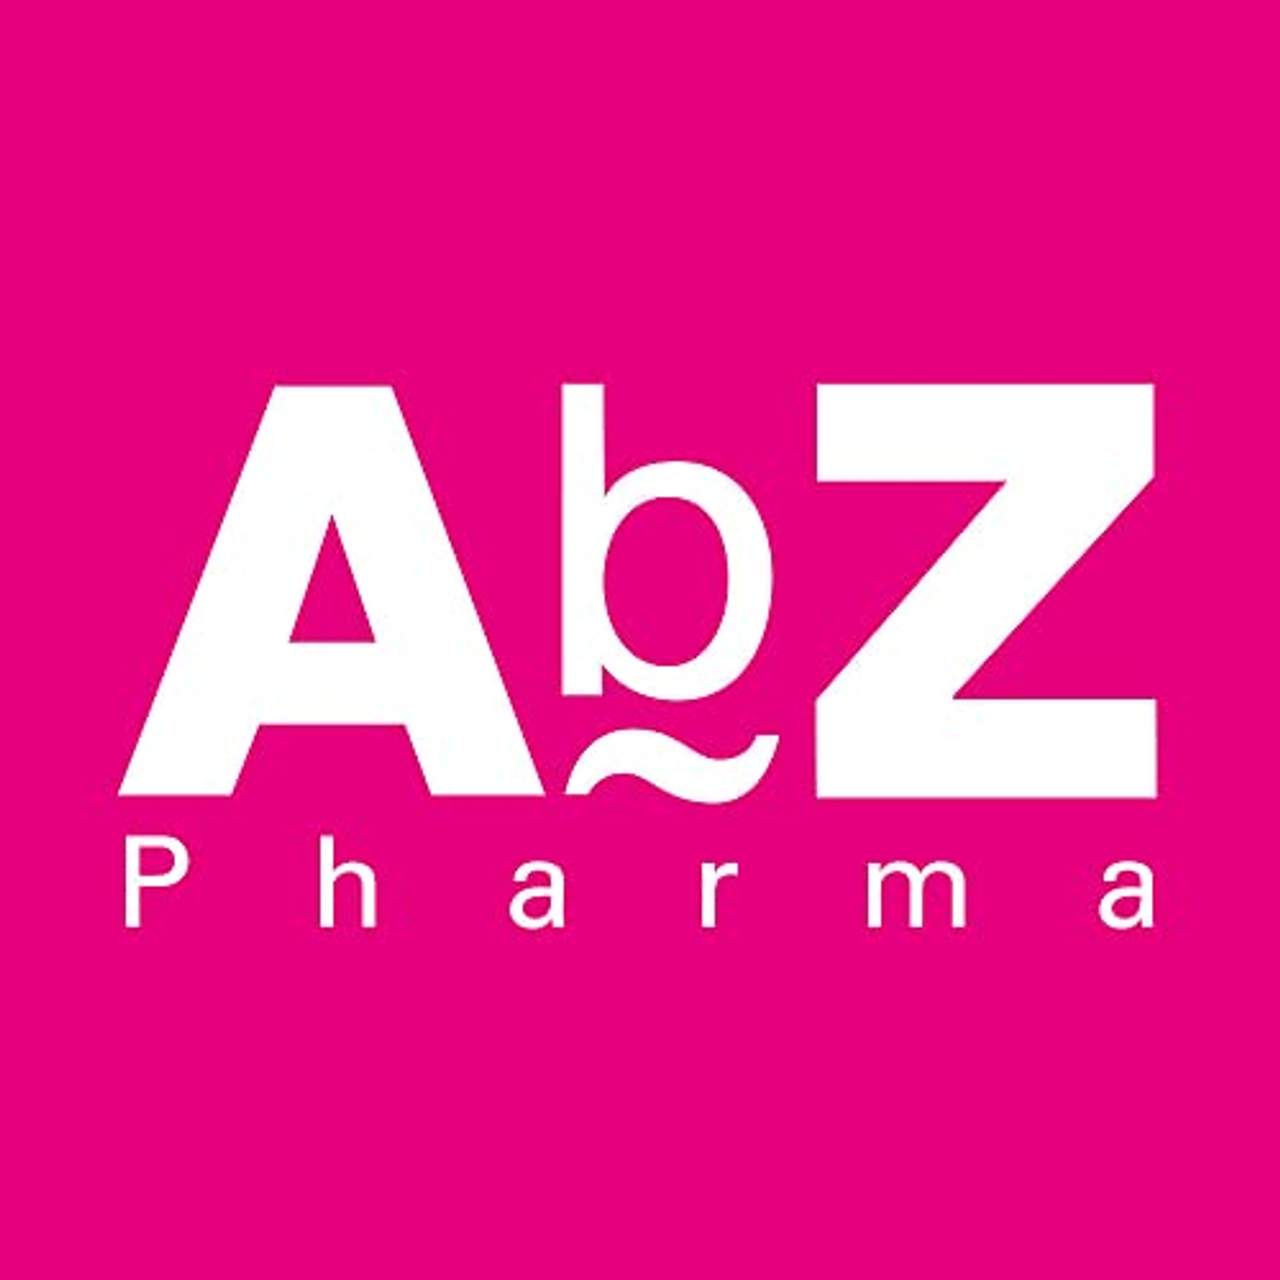 Folsäure AbZ 5 mg Tabletten bei Folsäuremangel